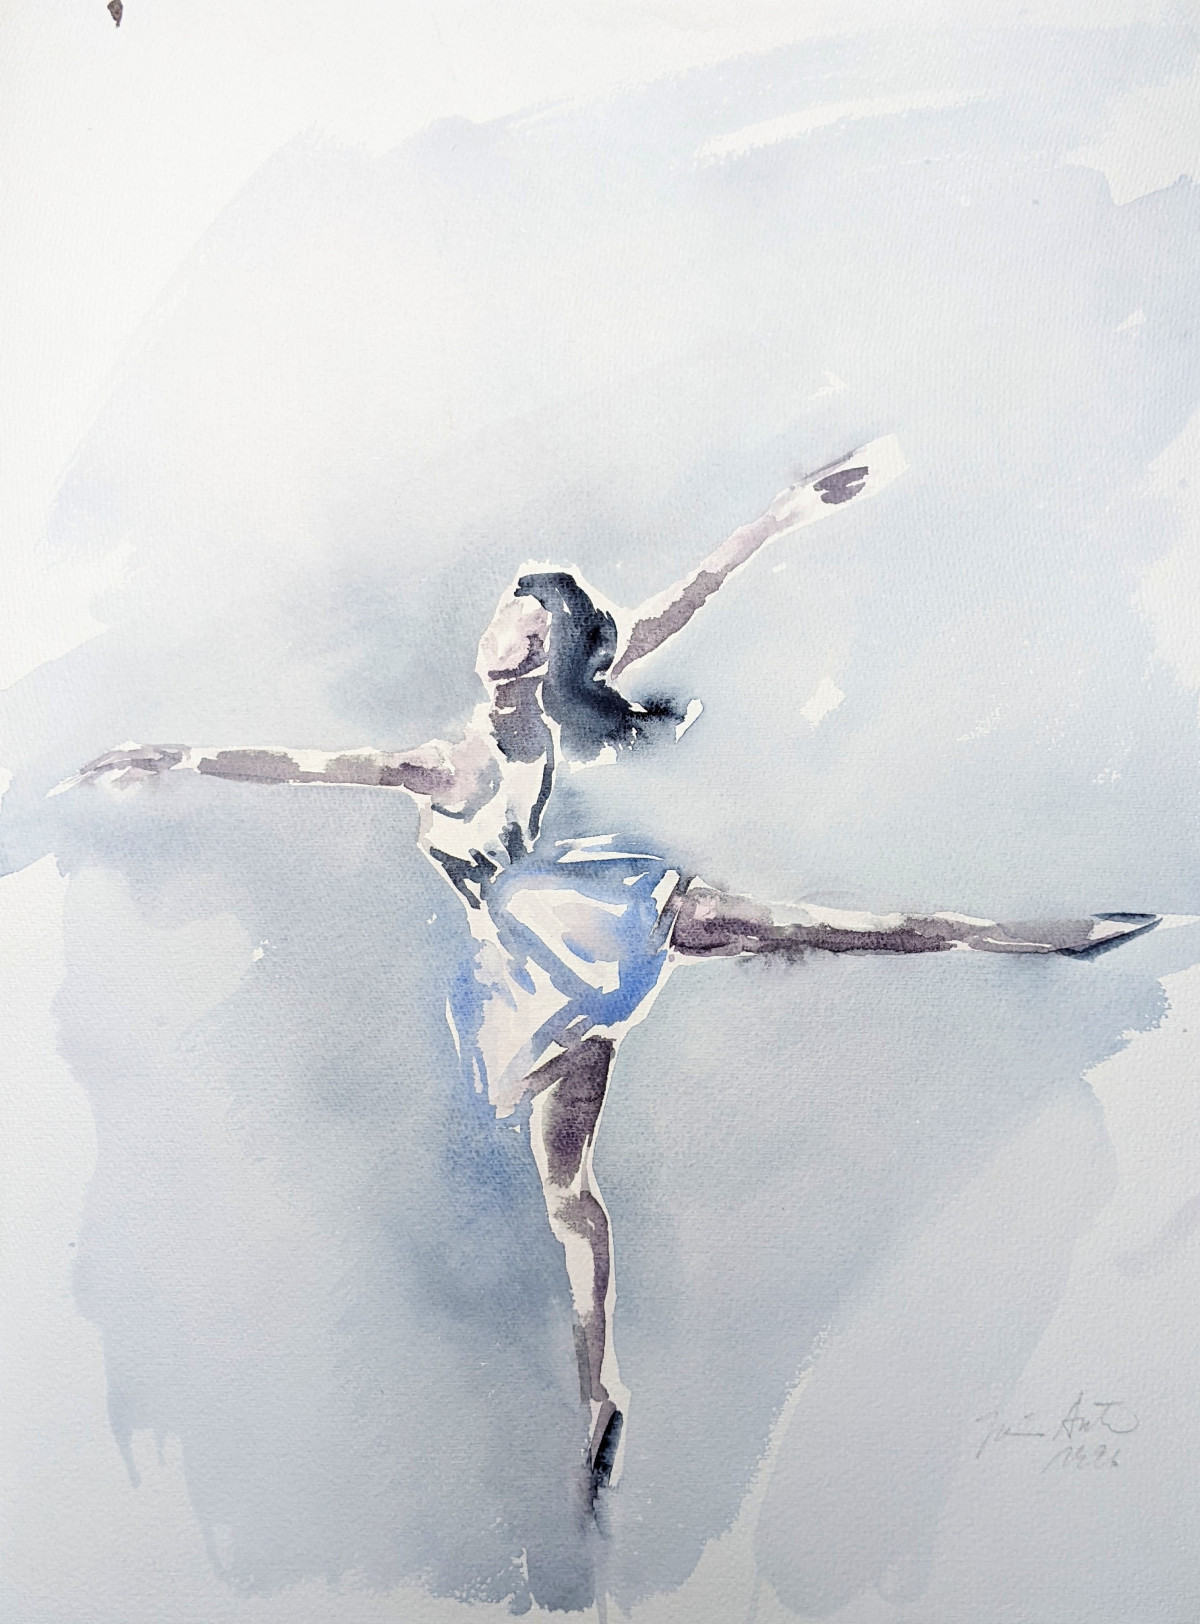 Tänzerin in weiß, ausladende Attitudefigur, Aquarell, 1.4.1996